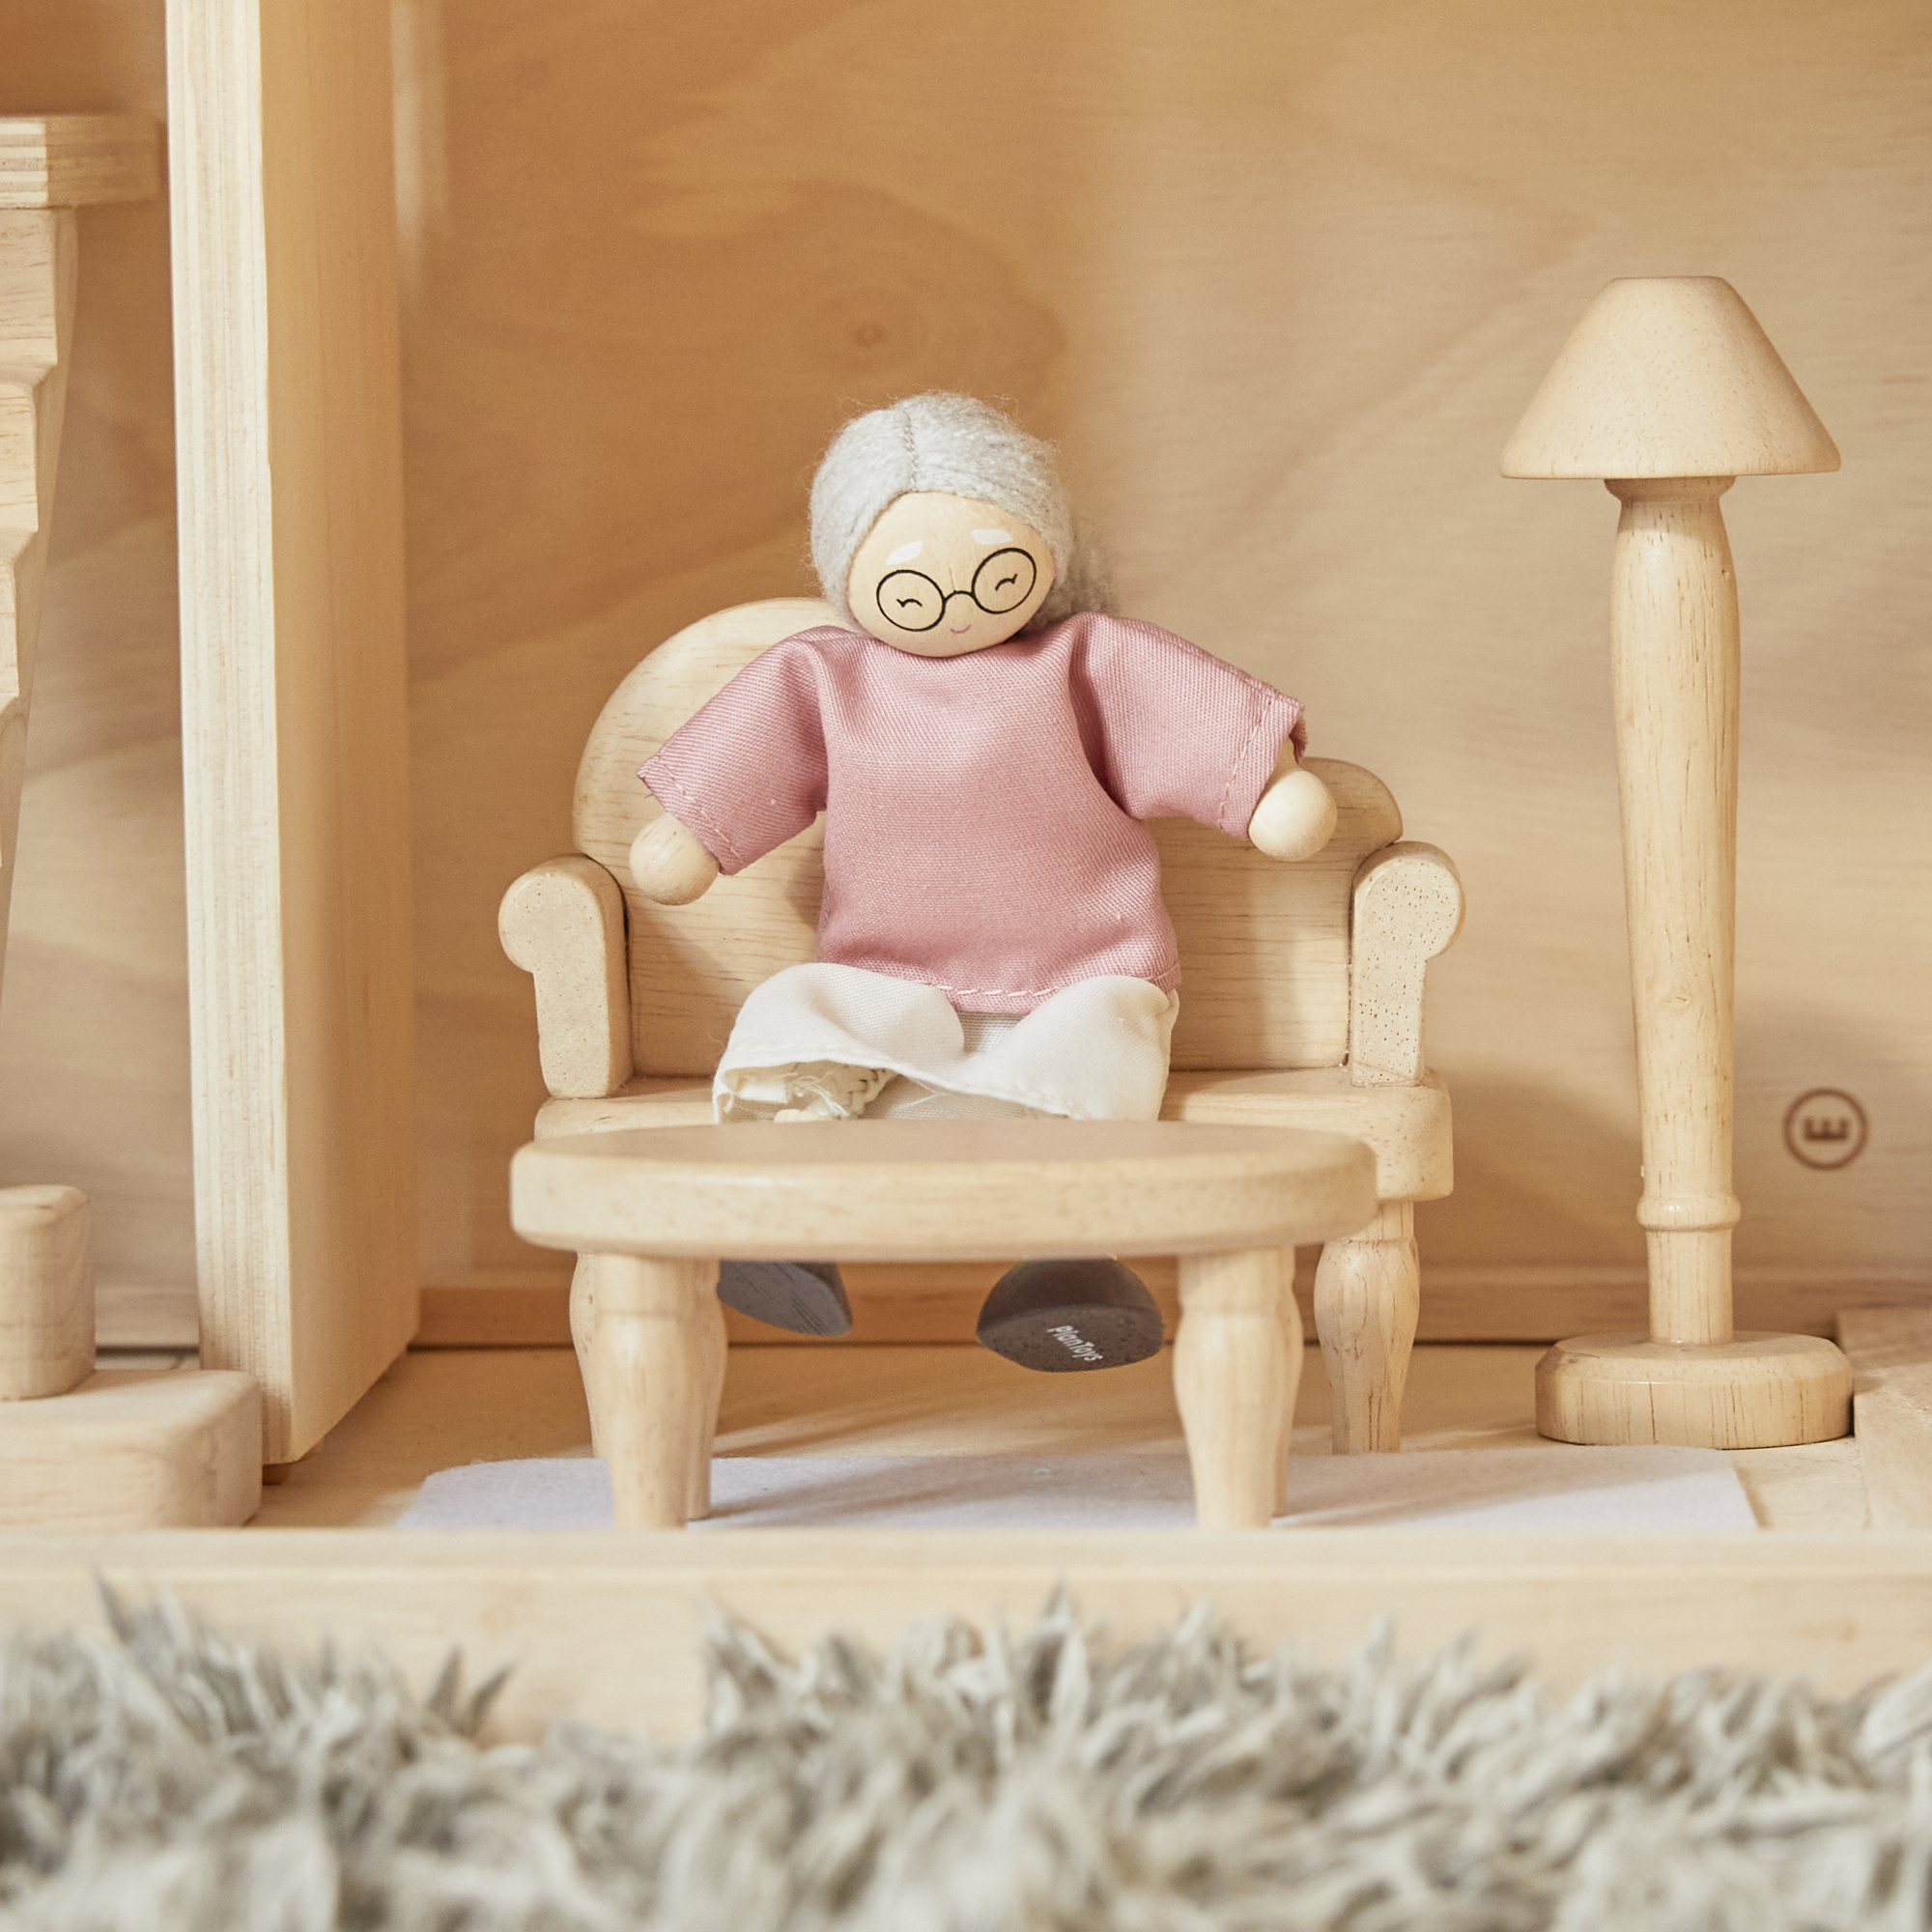 ของเล่นไม้  Grandmother Dollhouse Figure - Fair Skin Tone ตุ๊กตาคุณย่าคุณยาย-ผิวขาว เสริมพัฒนาการ สำหรับเด็กอายุ 3 ปี ขึ้นไป